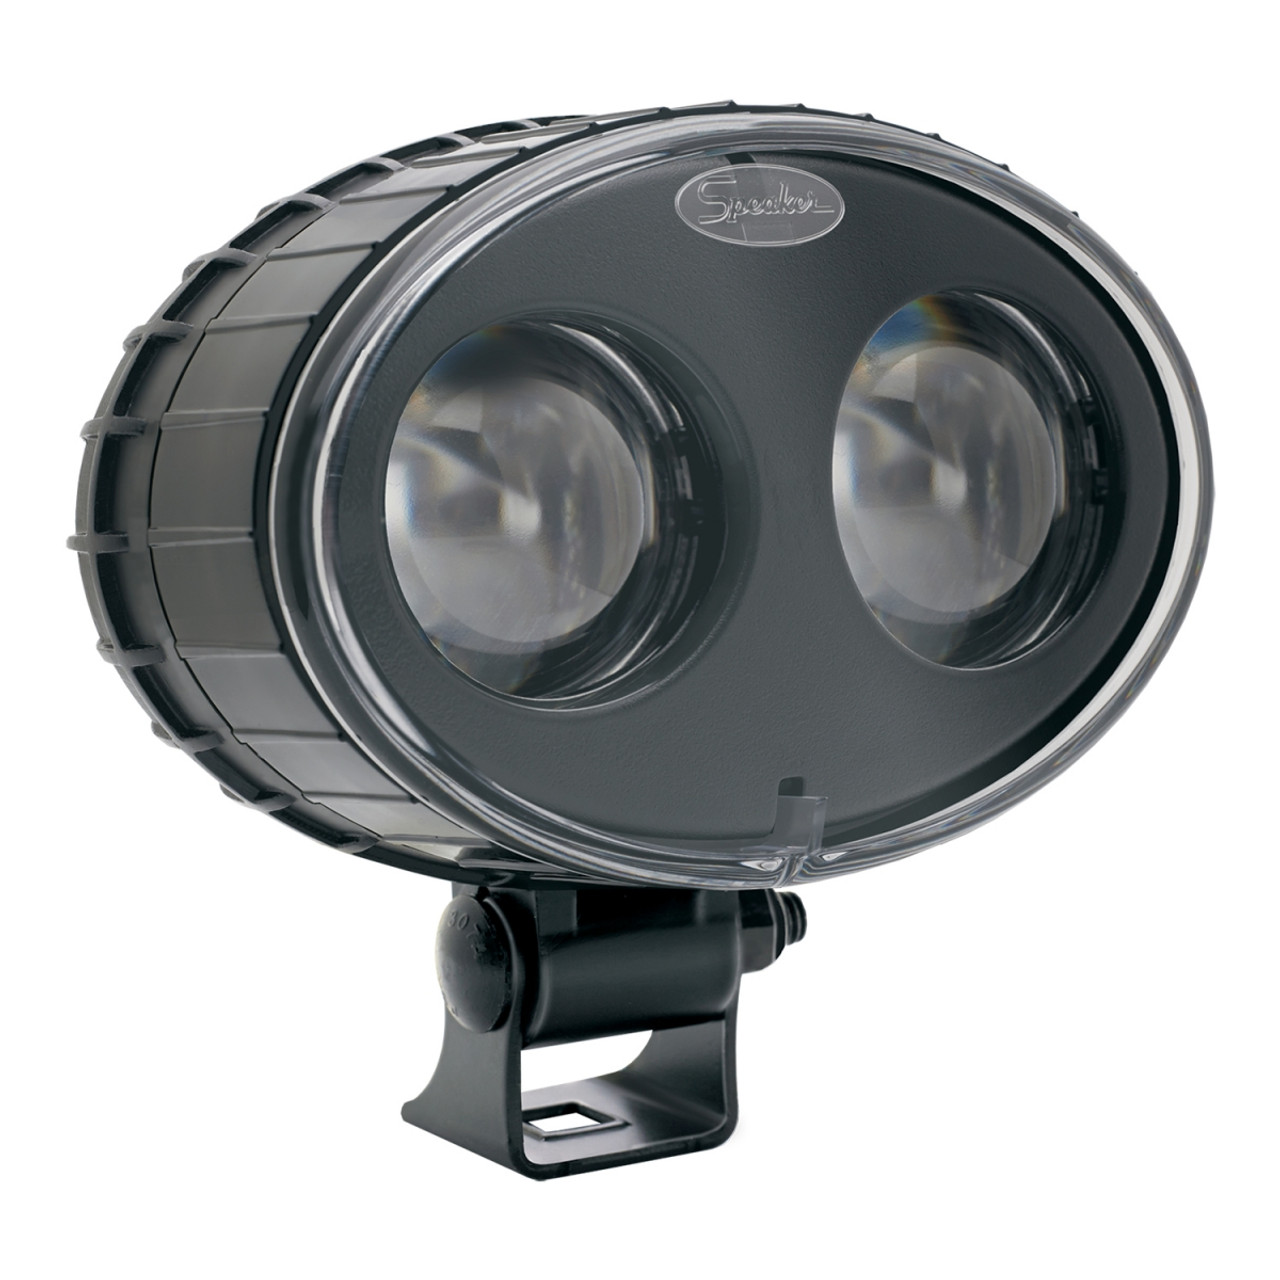 J.W. Speaker 12-110V LED Blue Material Handling Safety Light - Model 770 BLU